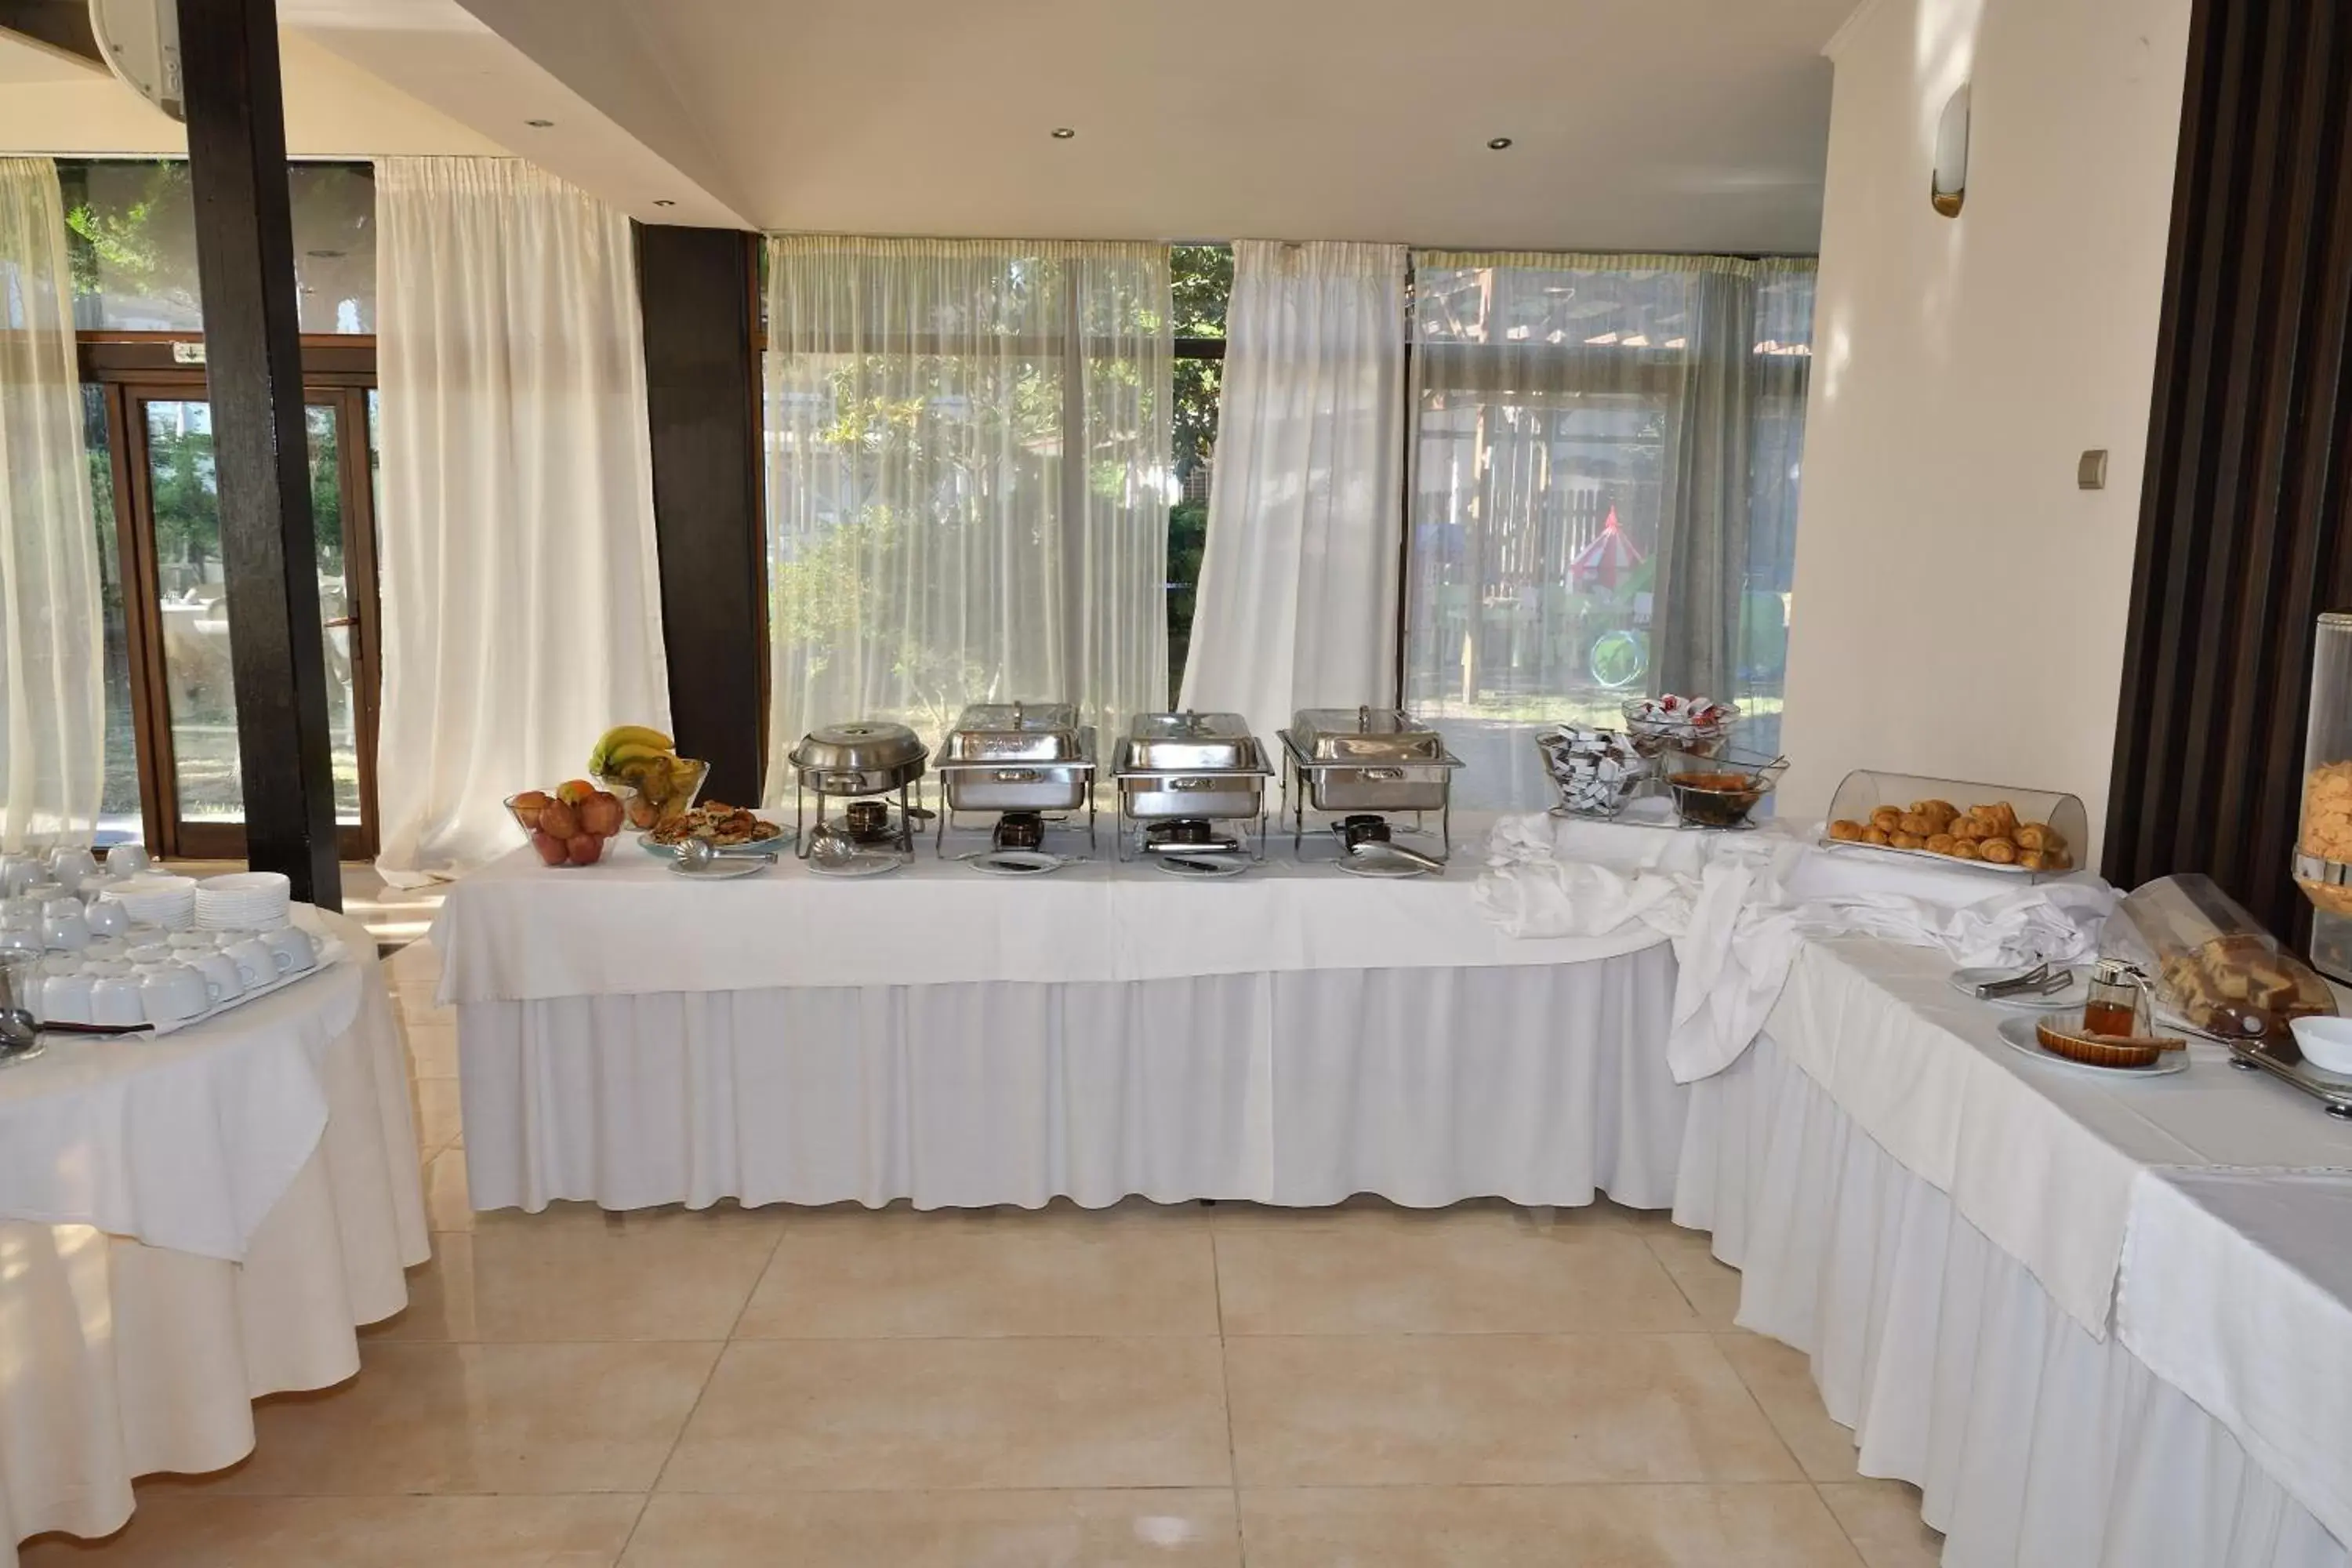 Buffet breakfast in Four Seasons Hotel